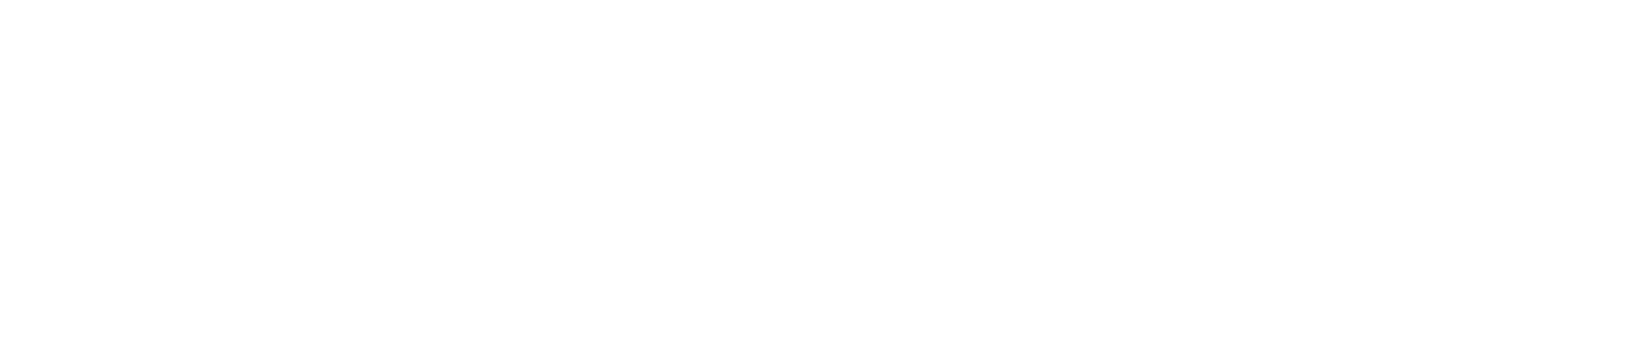 ETH Bucharest logo